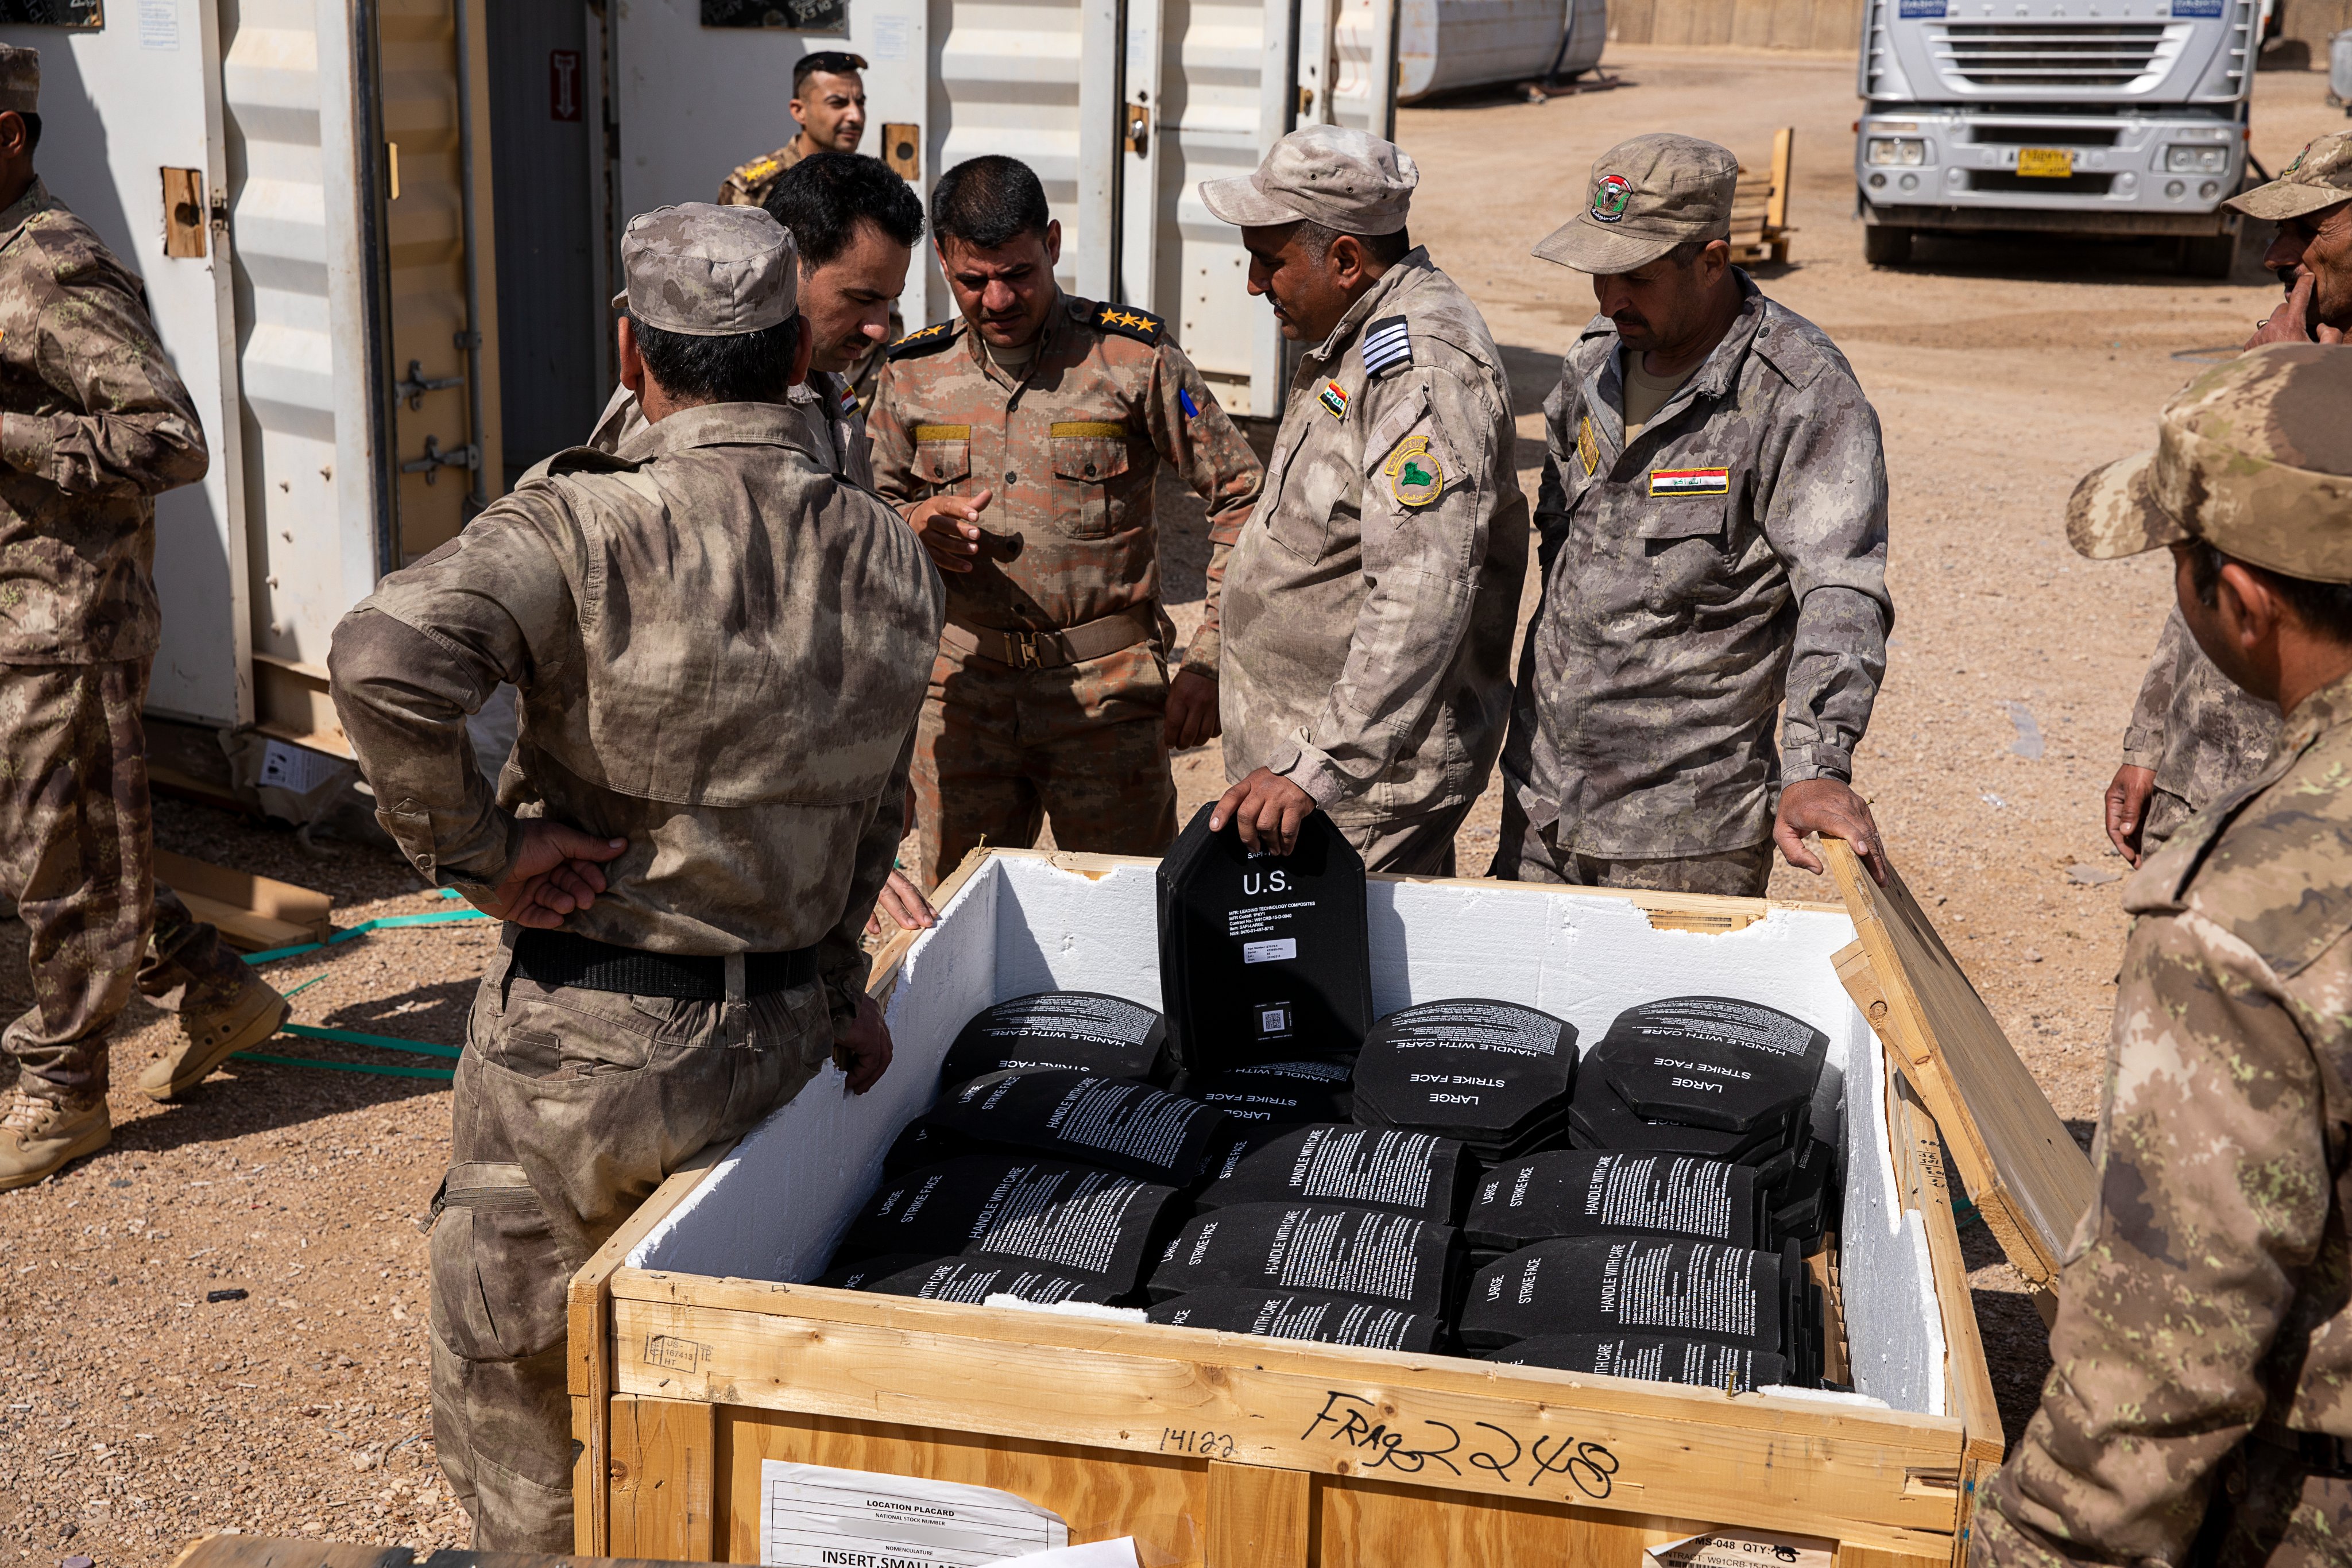 التحالف الدولي يمنح الفرقة السابعة في الجيش العراقي اسلحه وتجهيزات بقيمة 10 ملايين دولار مجانا GJvRimuXUAAJ3Zv?format=jpg&name=4096x4096